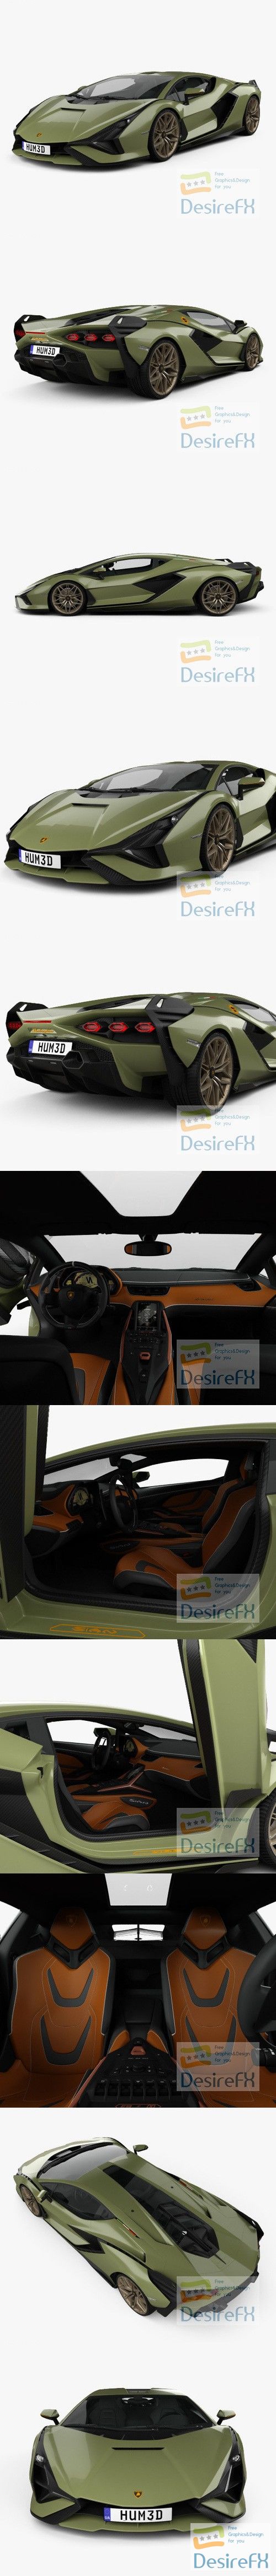 Lamborghini Sian with HQ interior 2020 3D Model